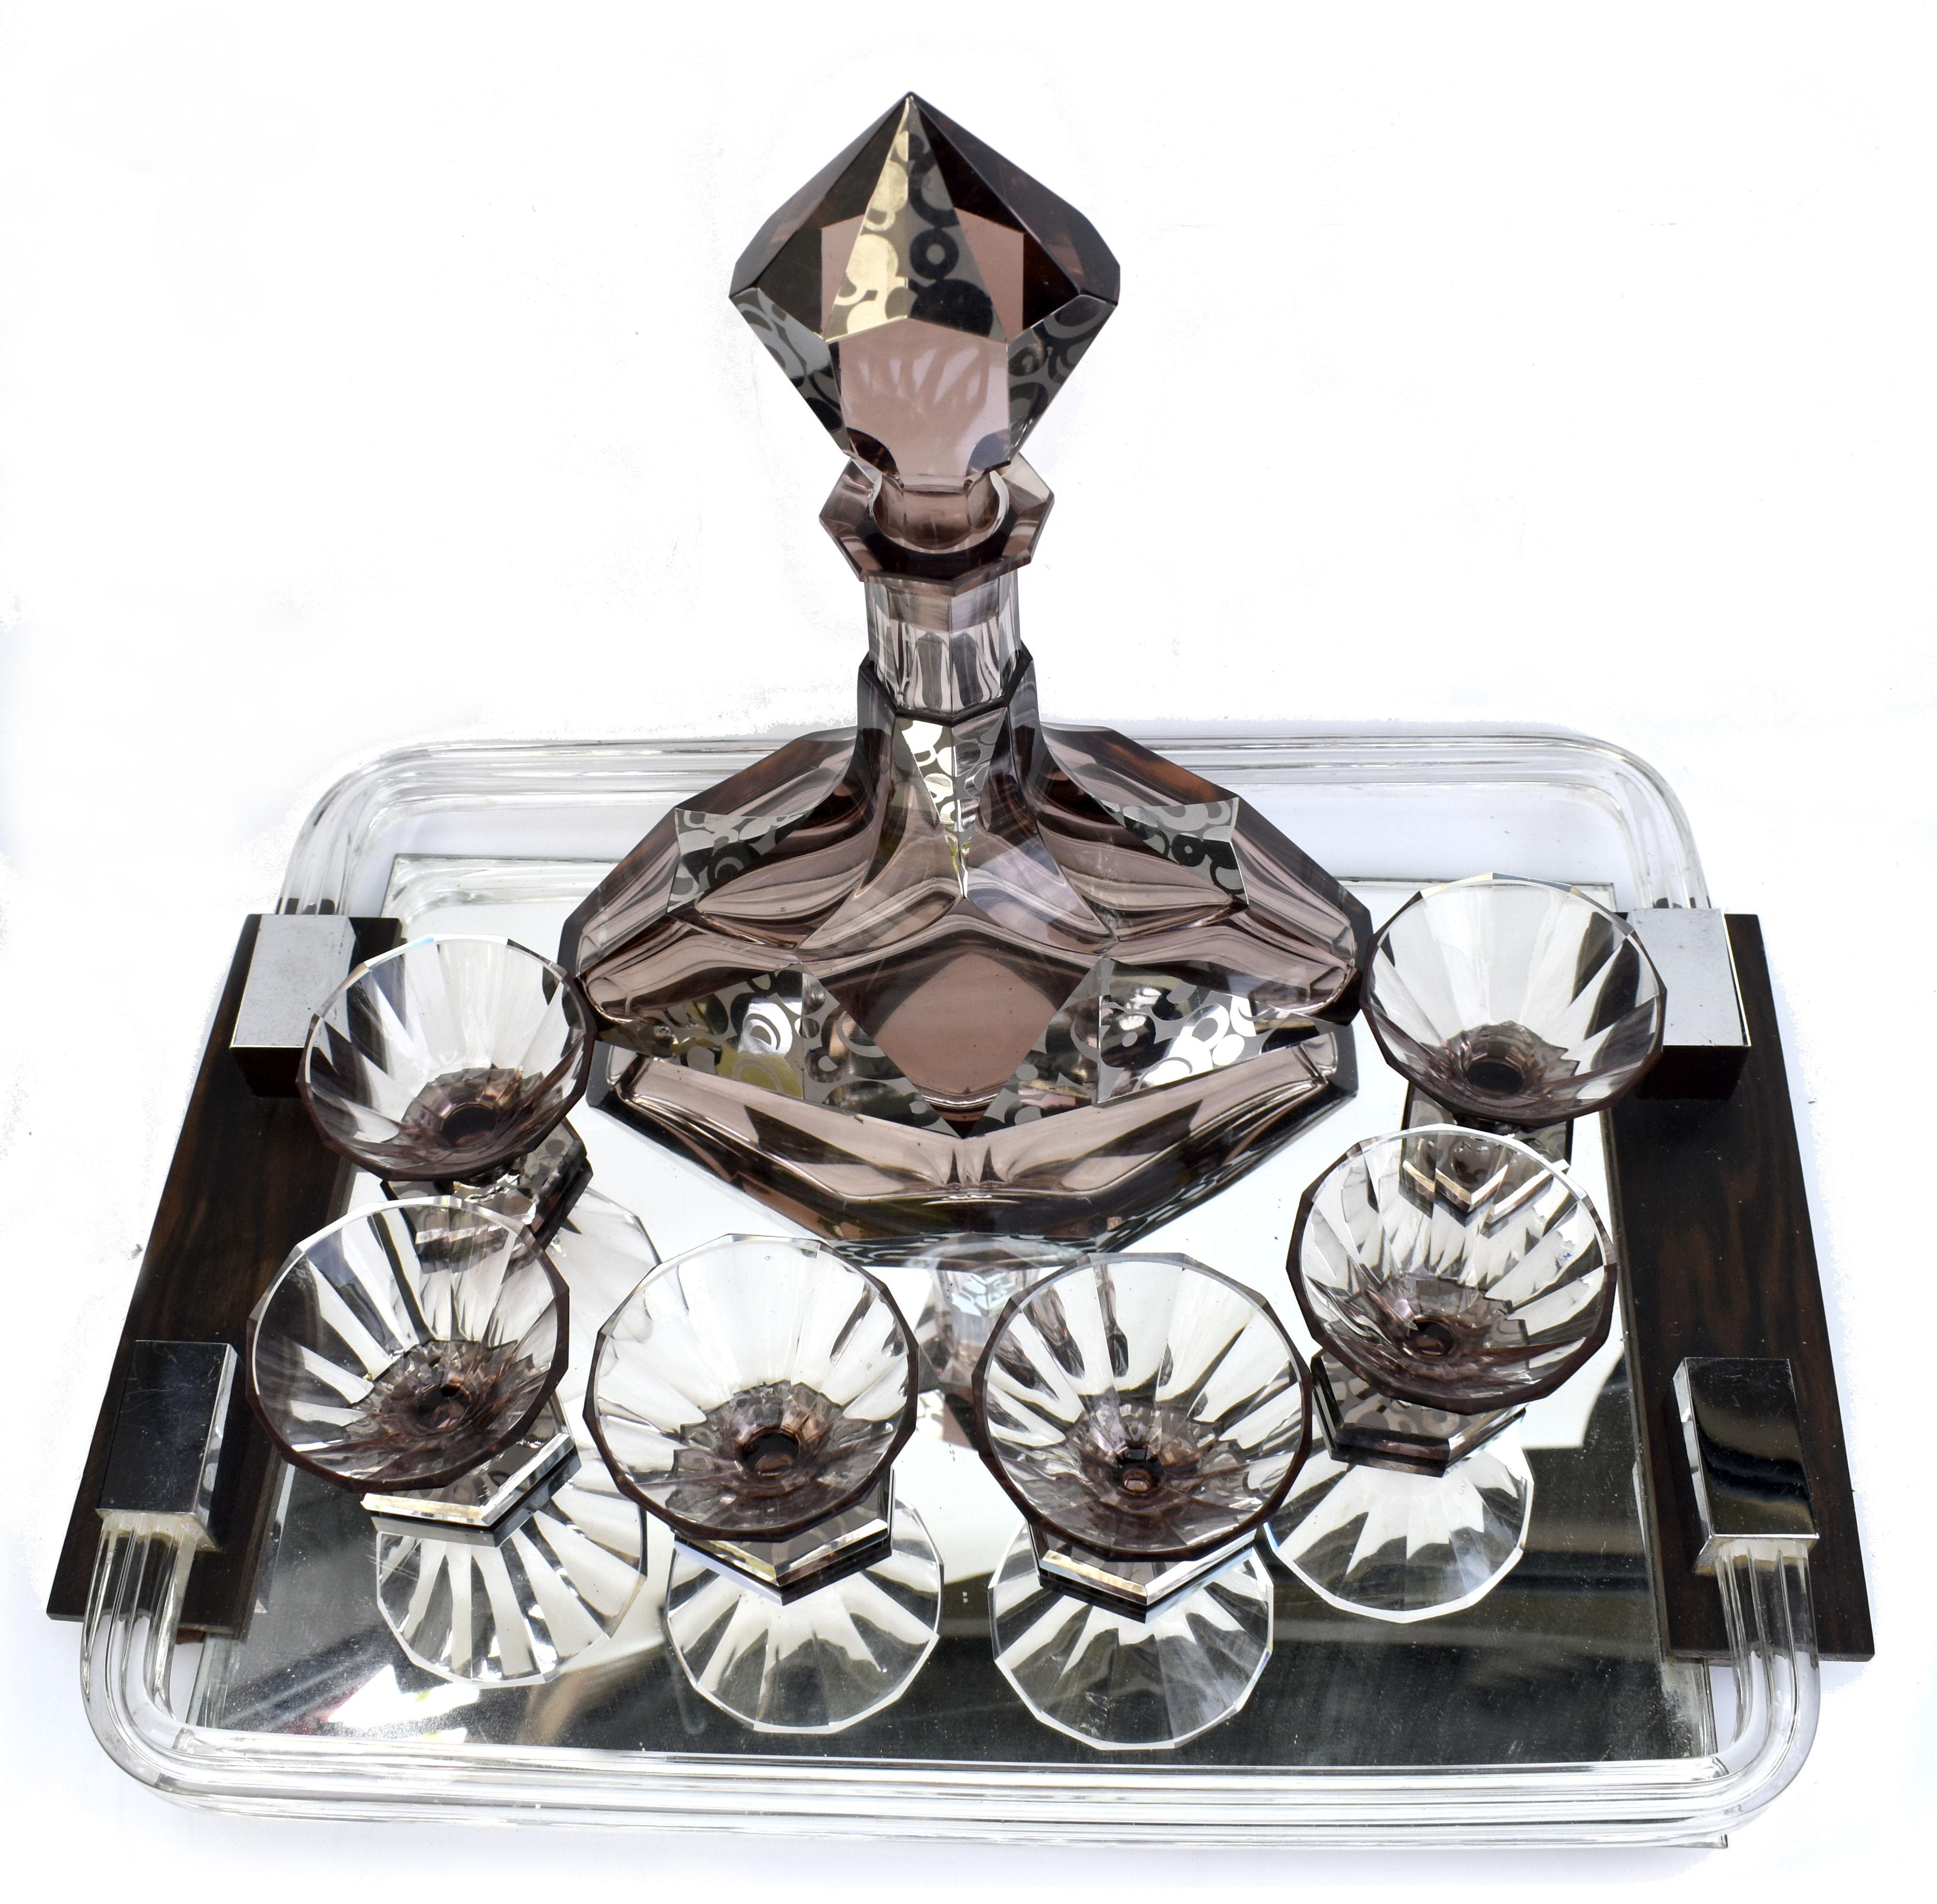 Ensemble de carafes en verre tchèque Art déco des années 1930 de très haute qualité et d'un aspect remarquable. Comprend une carafe de forme angulaire avec bouchon et six verres de forme conique de bonne taille, parfaits pour une utilisation